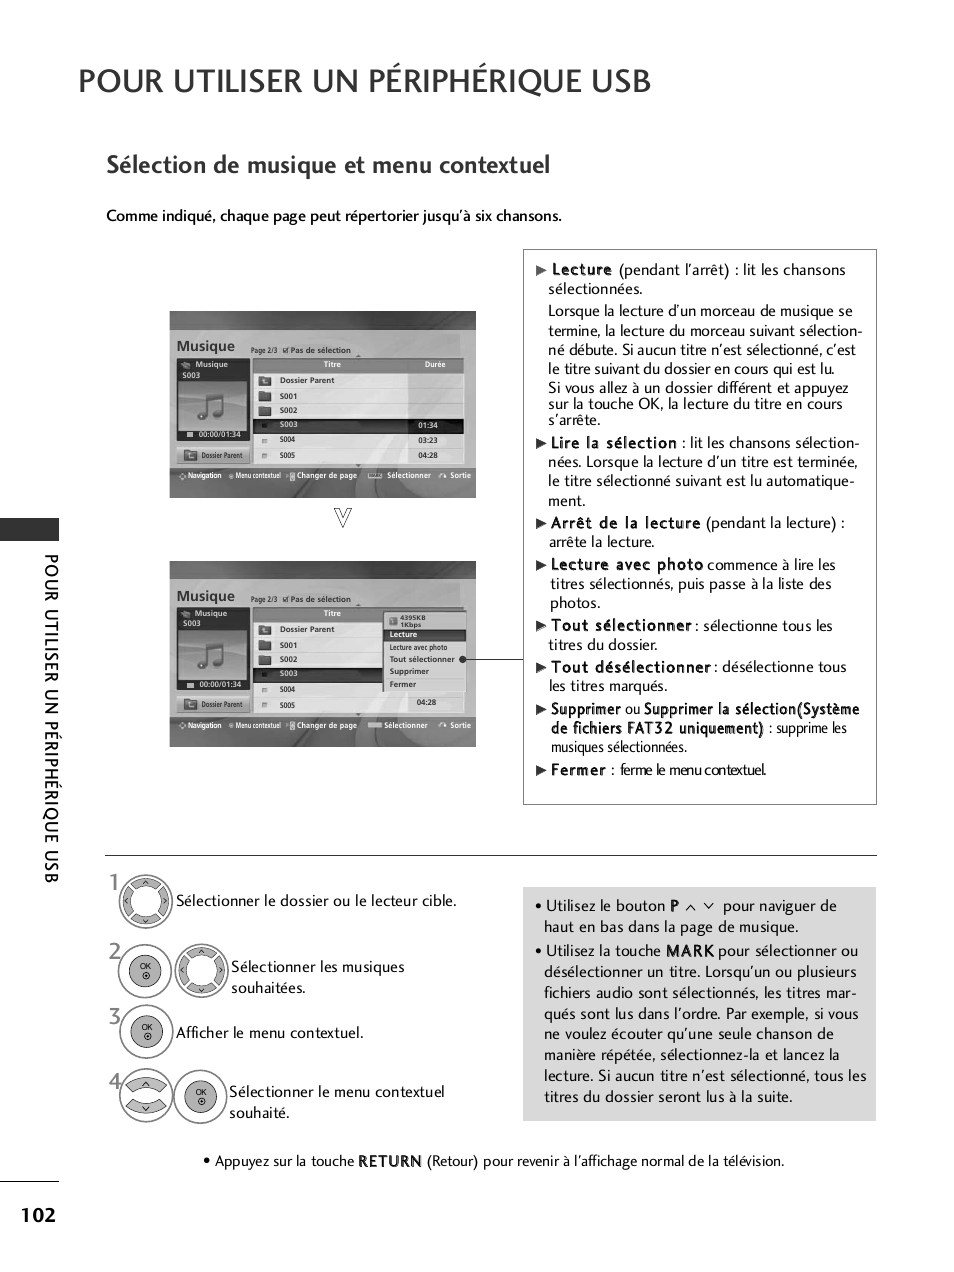 Sélection de musique et menu contextuel, Pour utiliser un périphérique usb | LG 32LH40 Manuel d'utilisation | Page 104 / 180